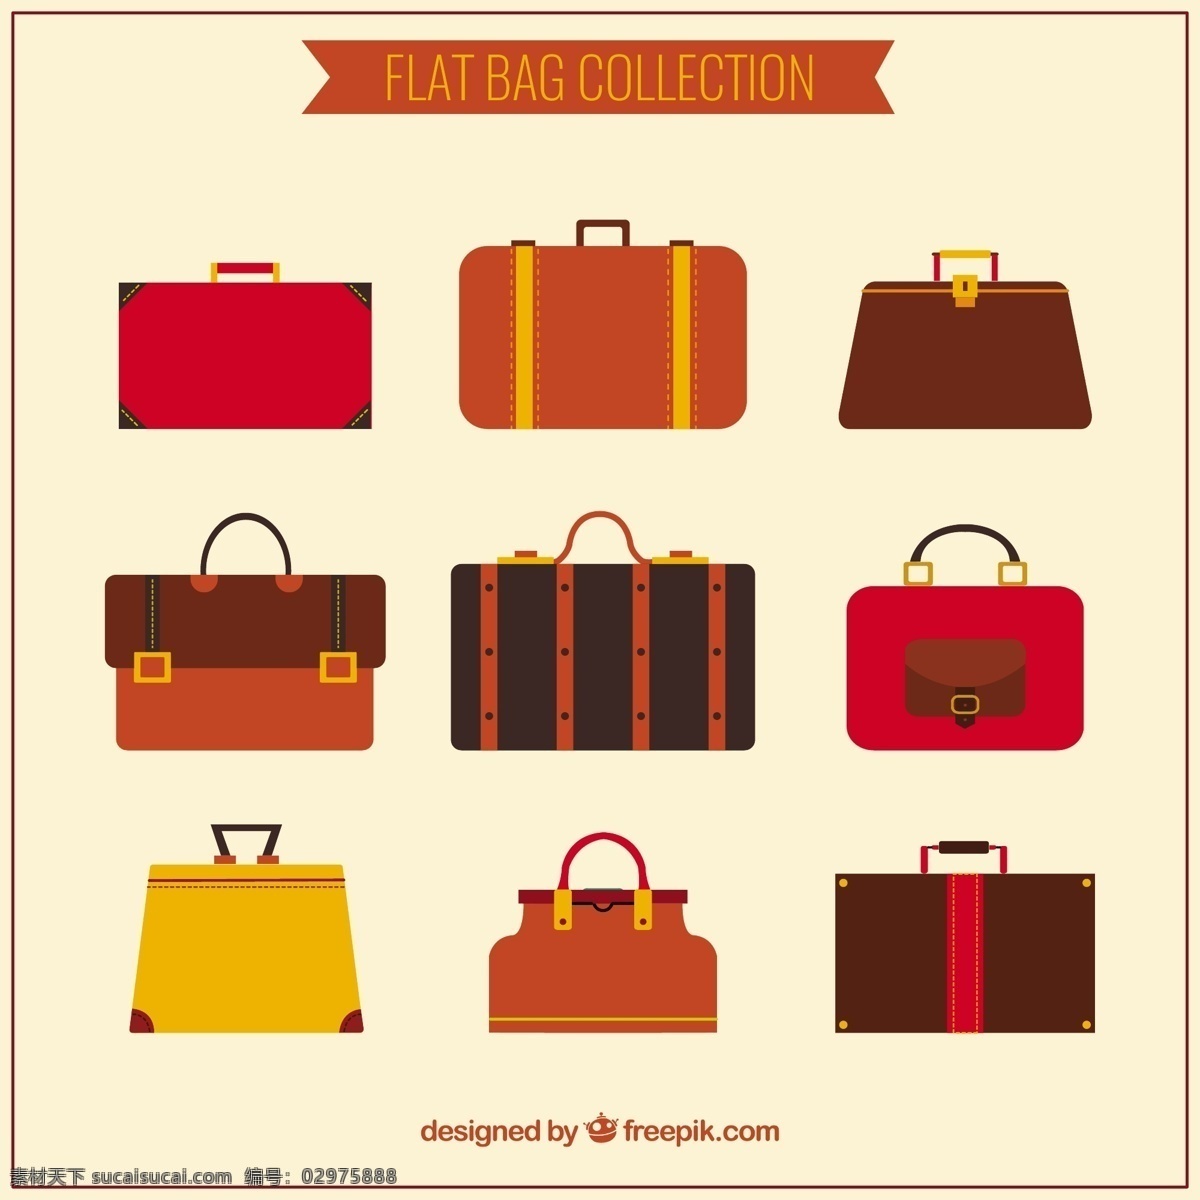 褐色 扁平 公文包 种 类型 旅游 时尚 购物 平面 箱包 商店 丰富多彩 购物袋 平面设计 背包 棕色 手袋 旅行包 顾客 行李 配件